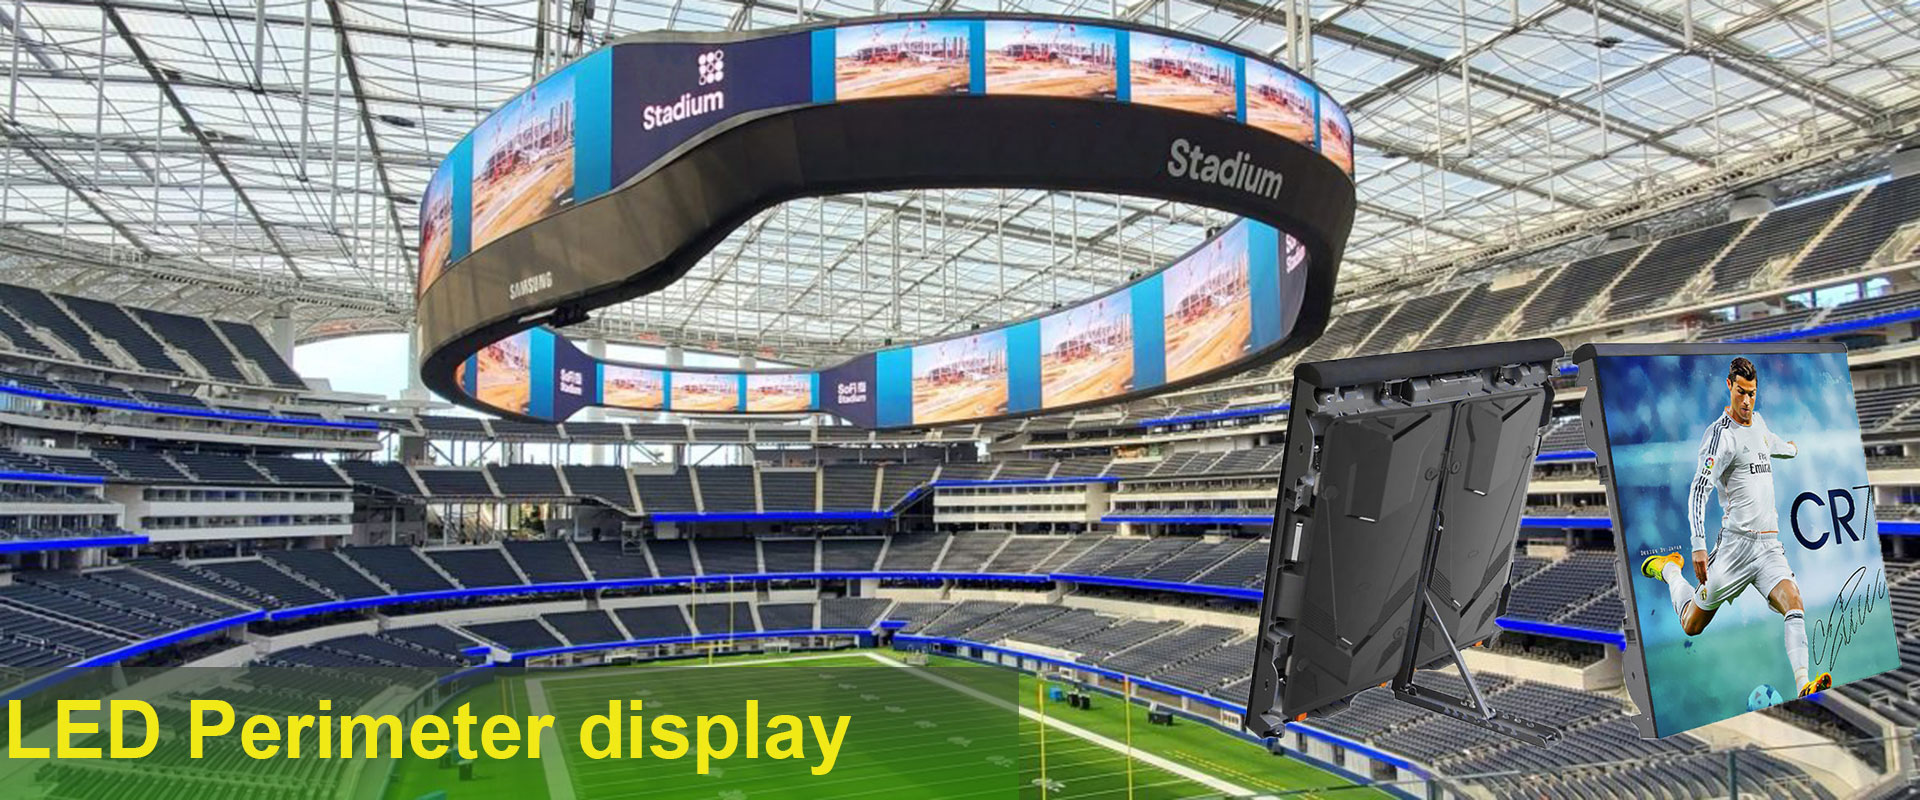 Stadium-LED-display